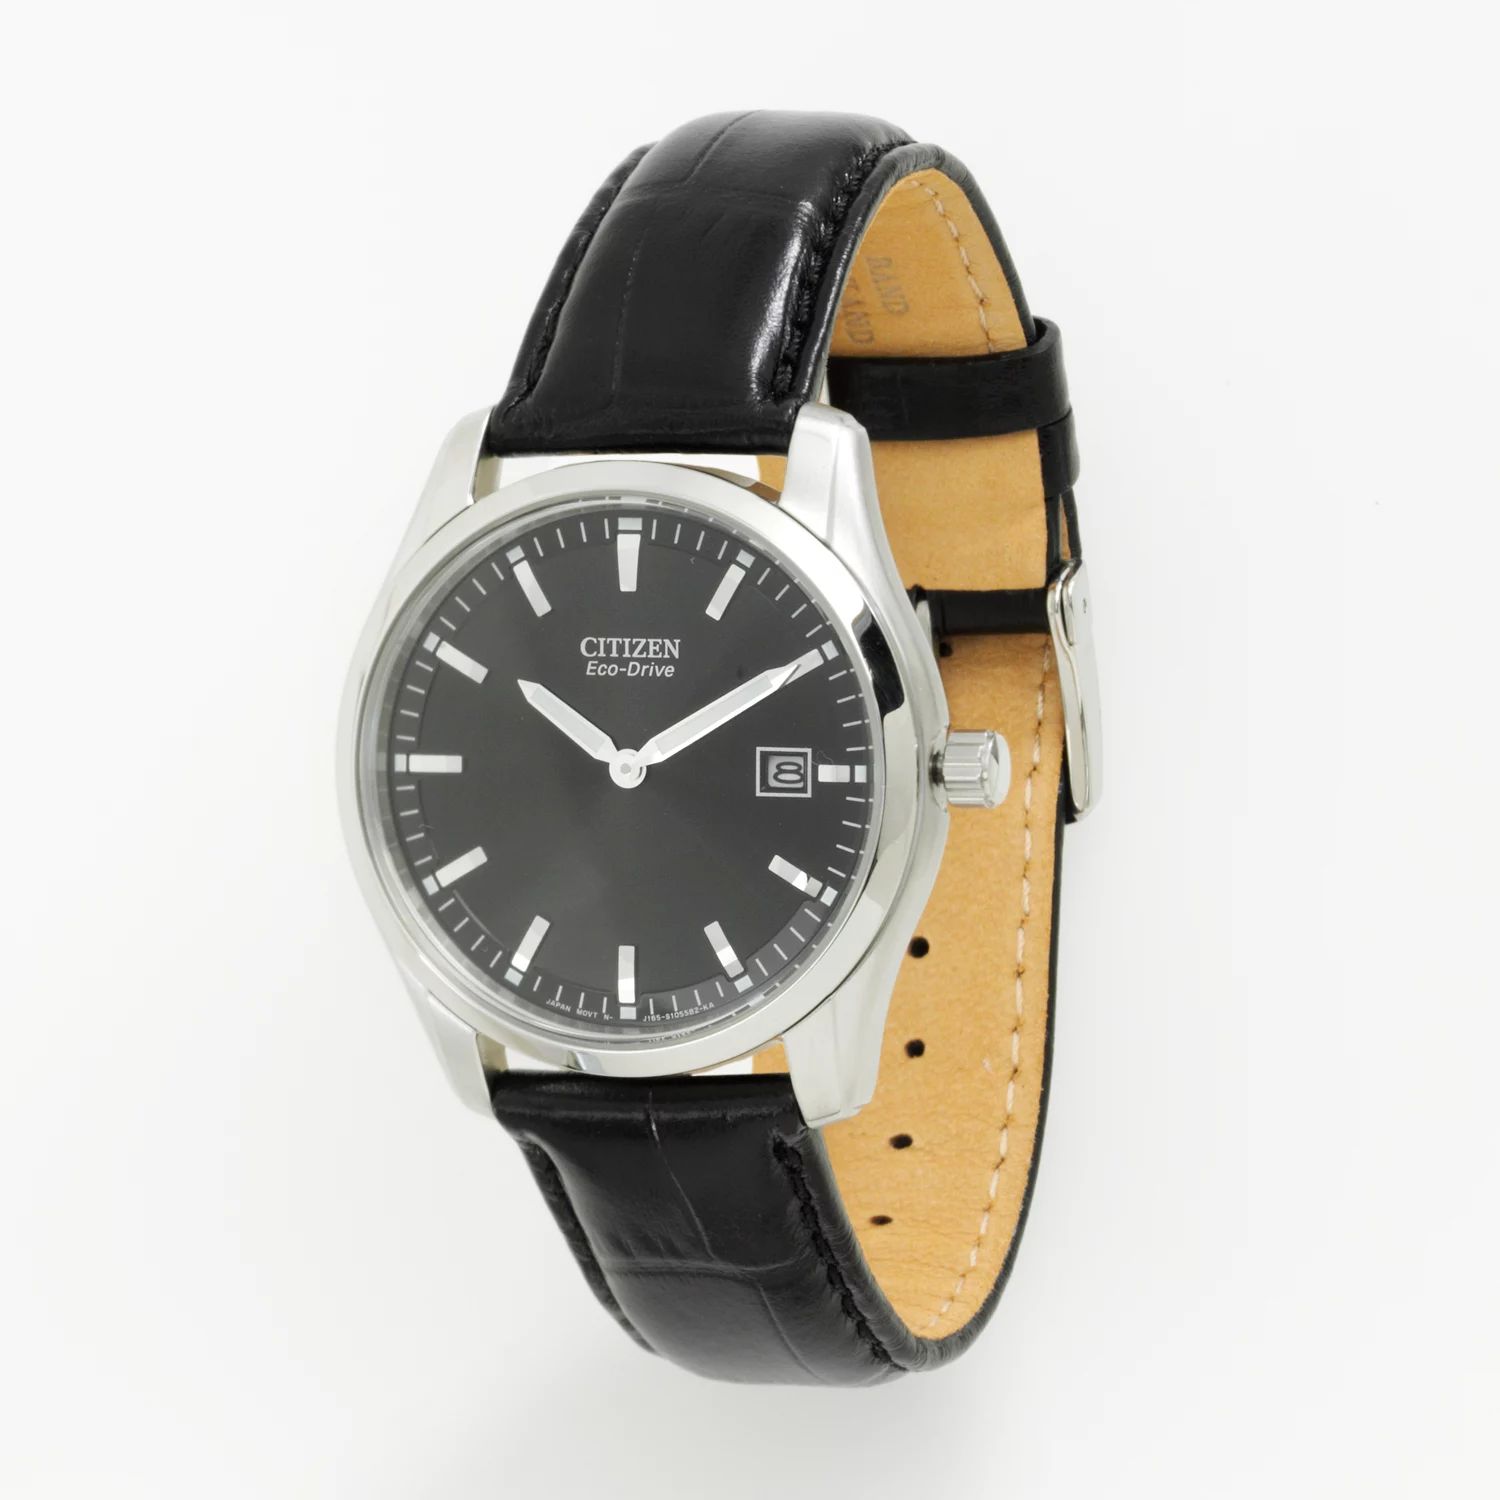 Мужские кожаные часы Citizen Eco-Drive — AU1040-08E Relic by Fossil часы citizen jp2000 08e